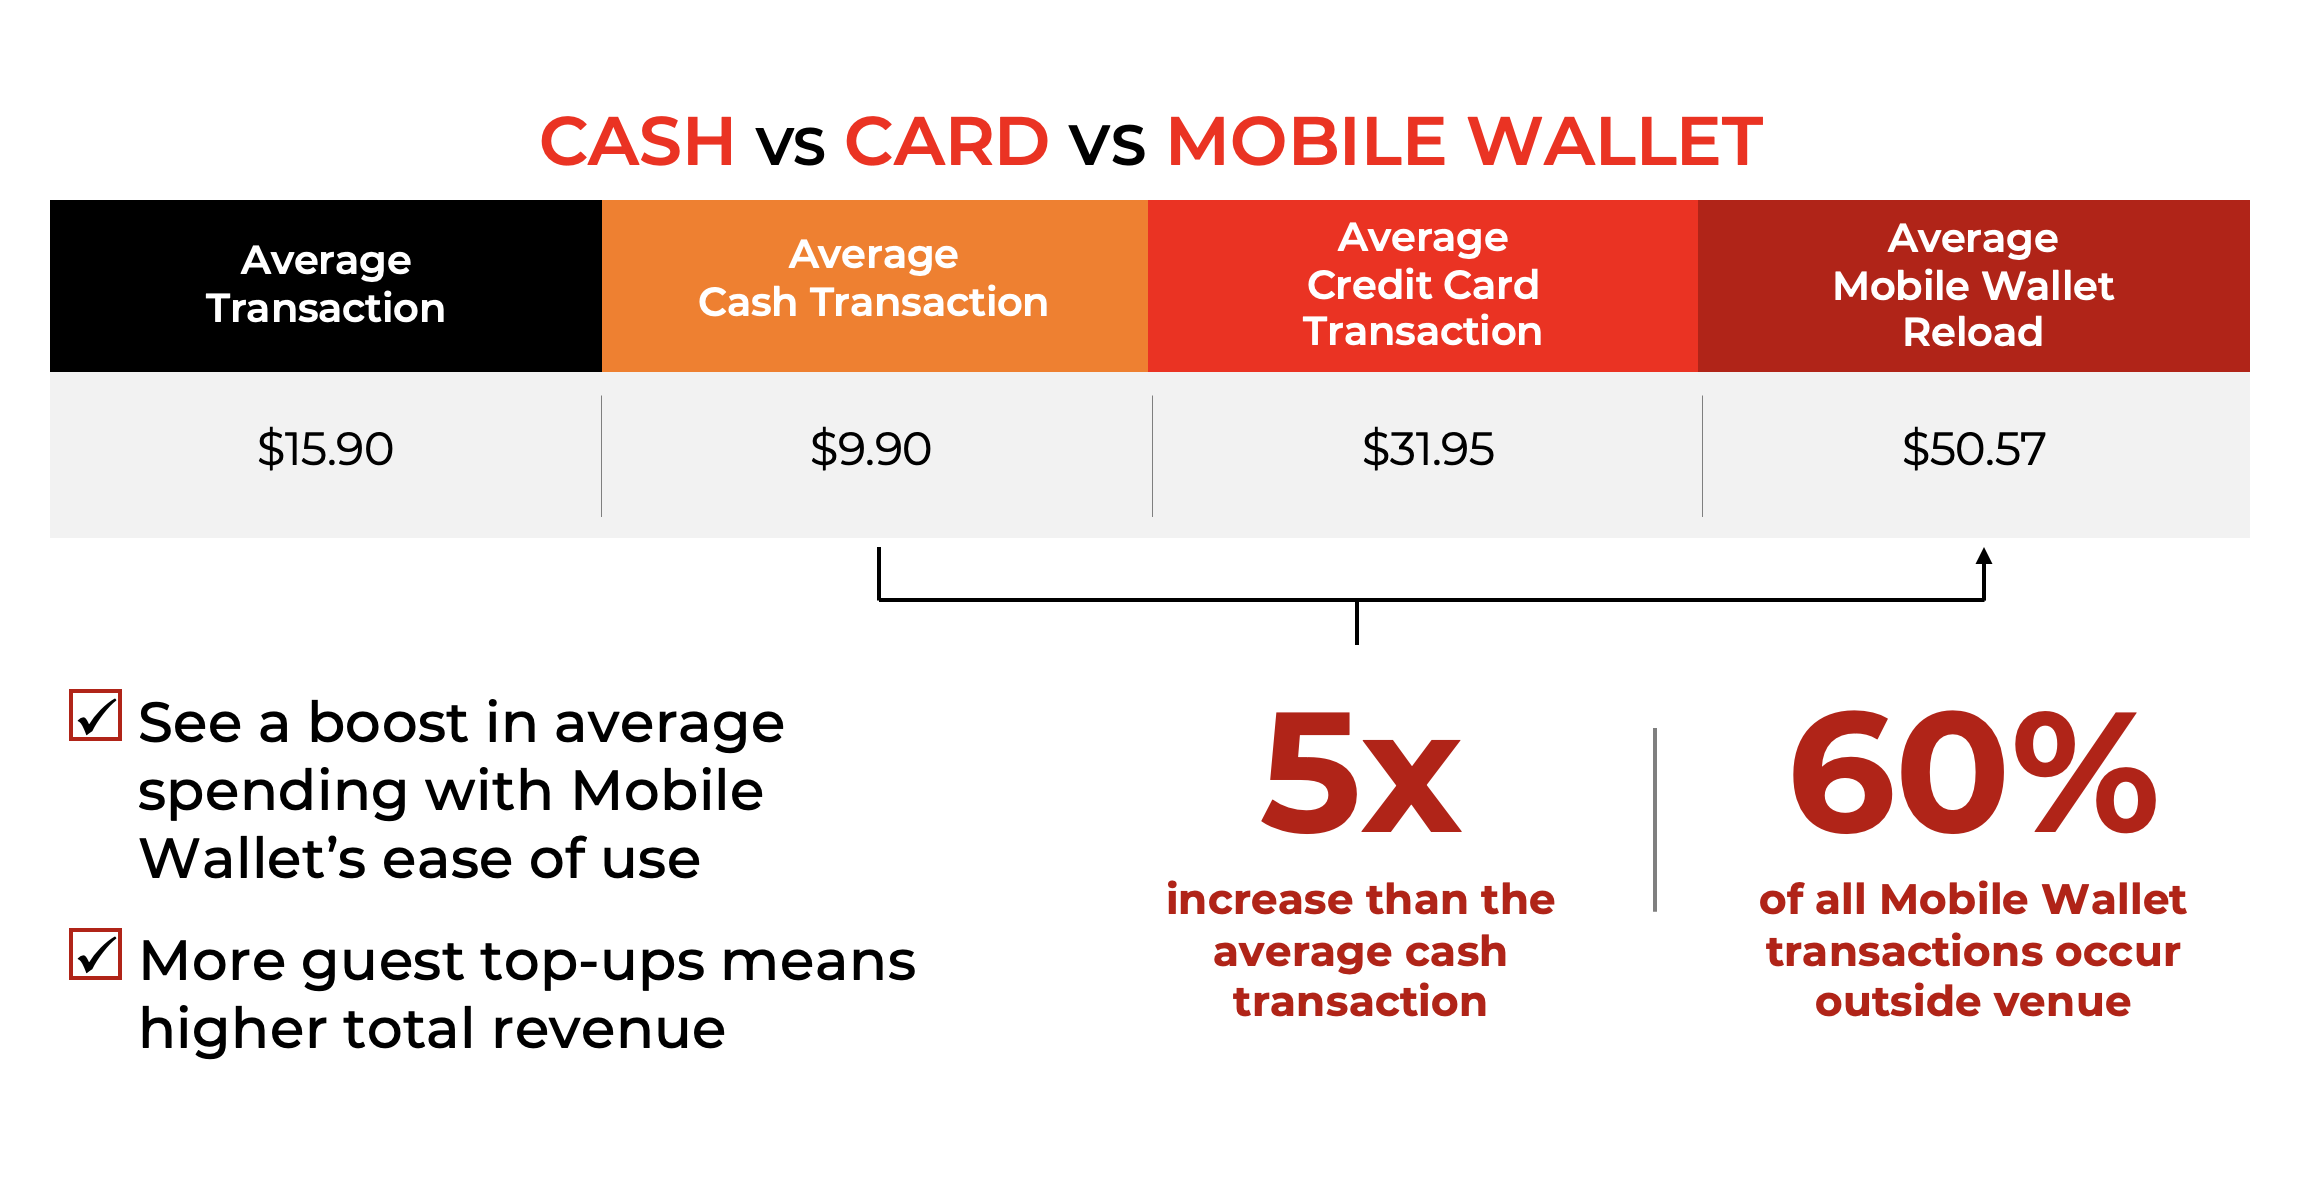 Cash vs Card vs Mobile Wallet_5x Increase